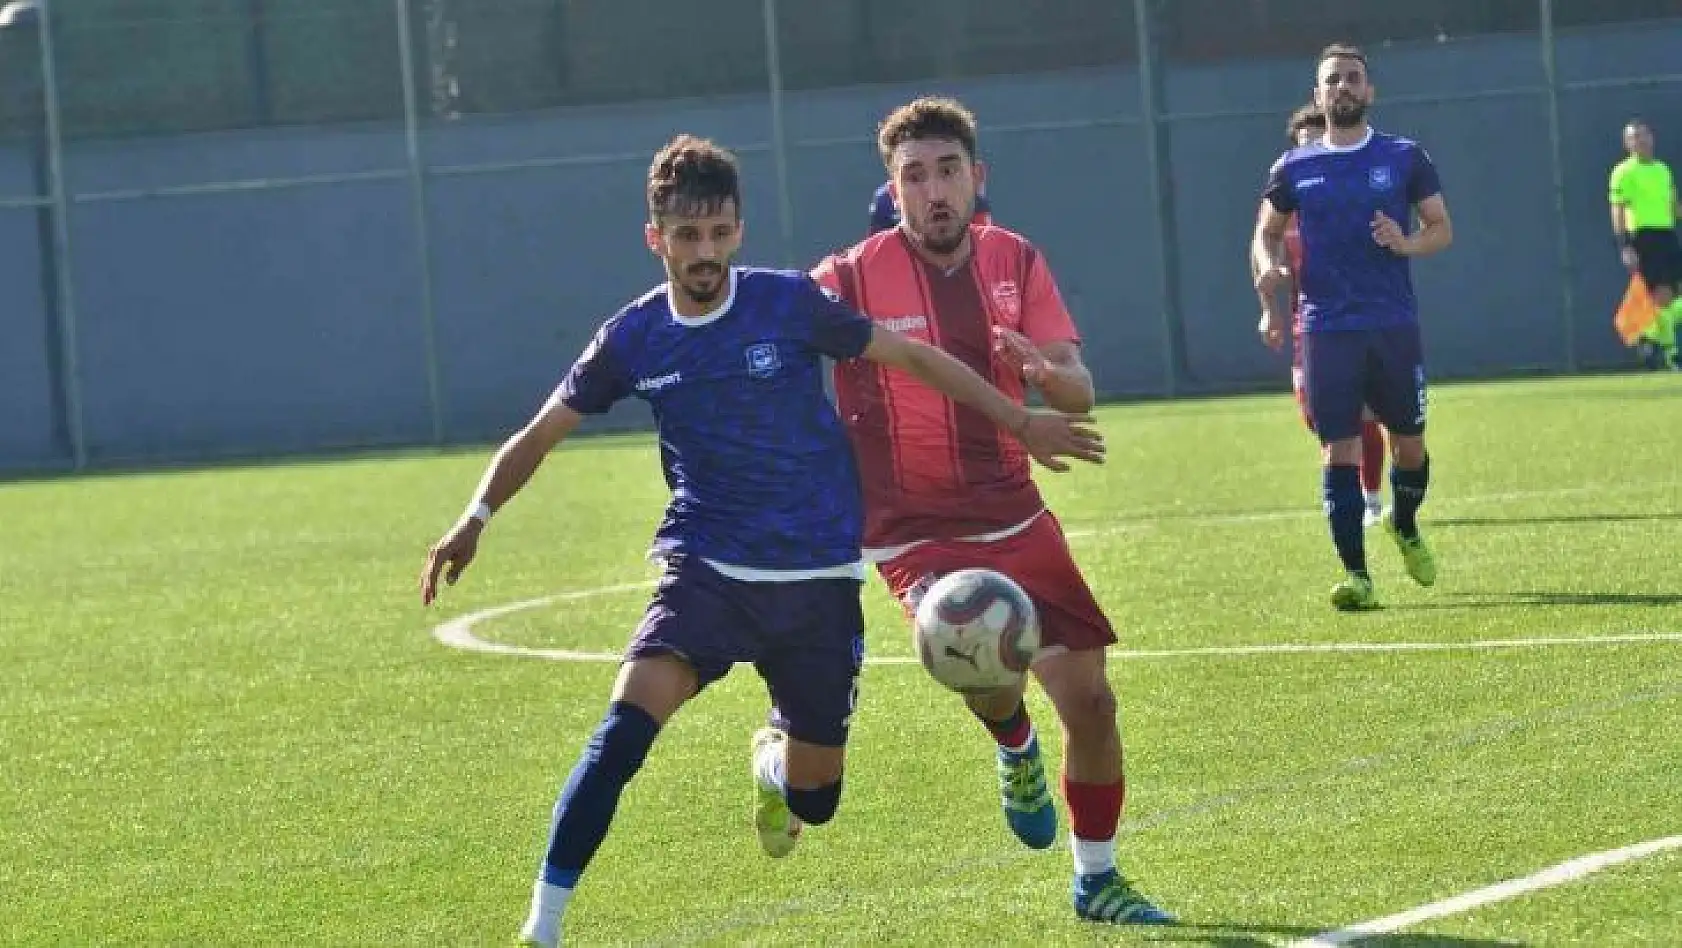 BAL 9. Grup 1. Bölge: Yunusemre Belediyespor: 3- İscehisarspor: 0